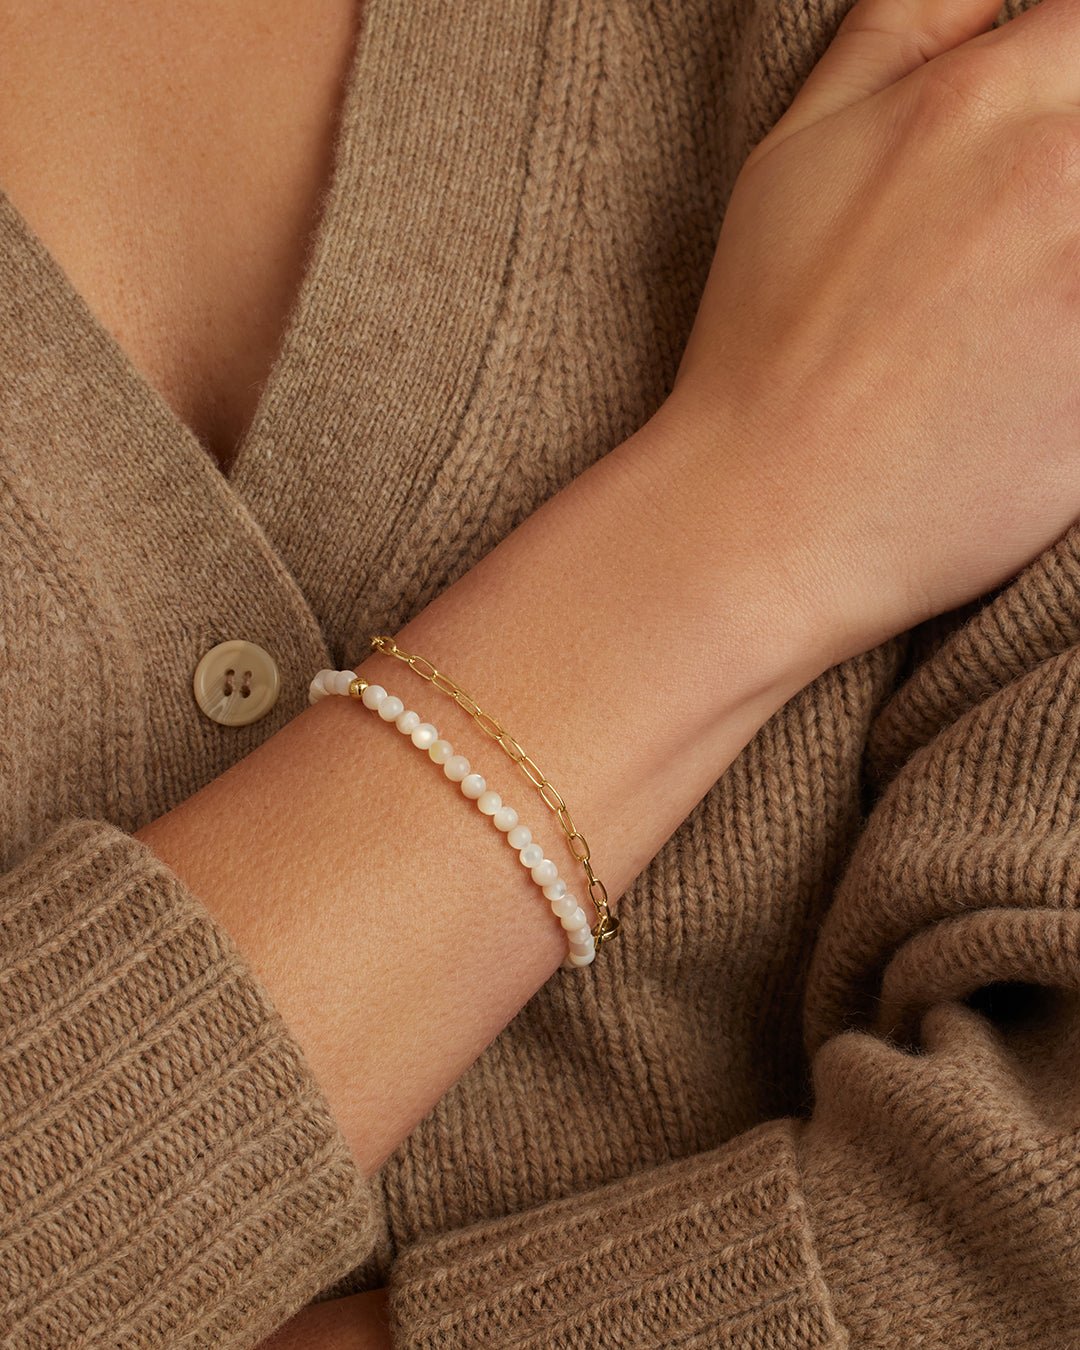 Carter Gemstone Bracelet || option::Gold Plated, Mother of Pearl || set::carter-gemstone-bracelet-mother-of-pearl